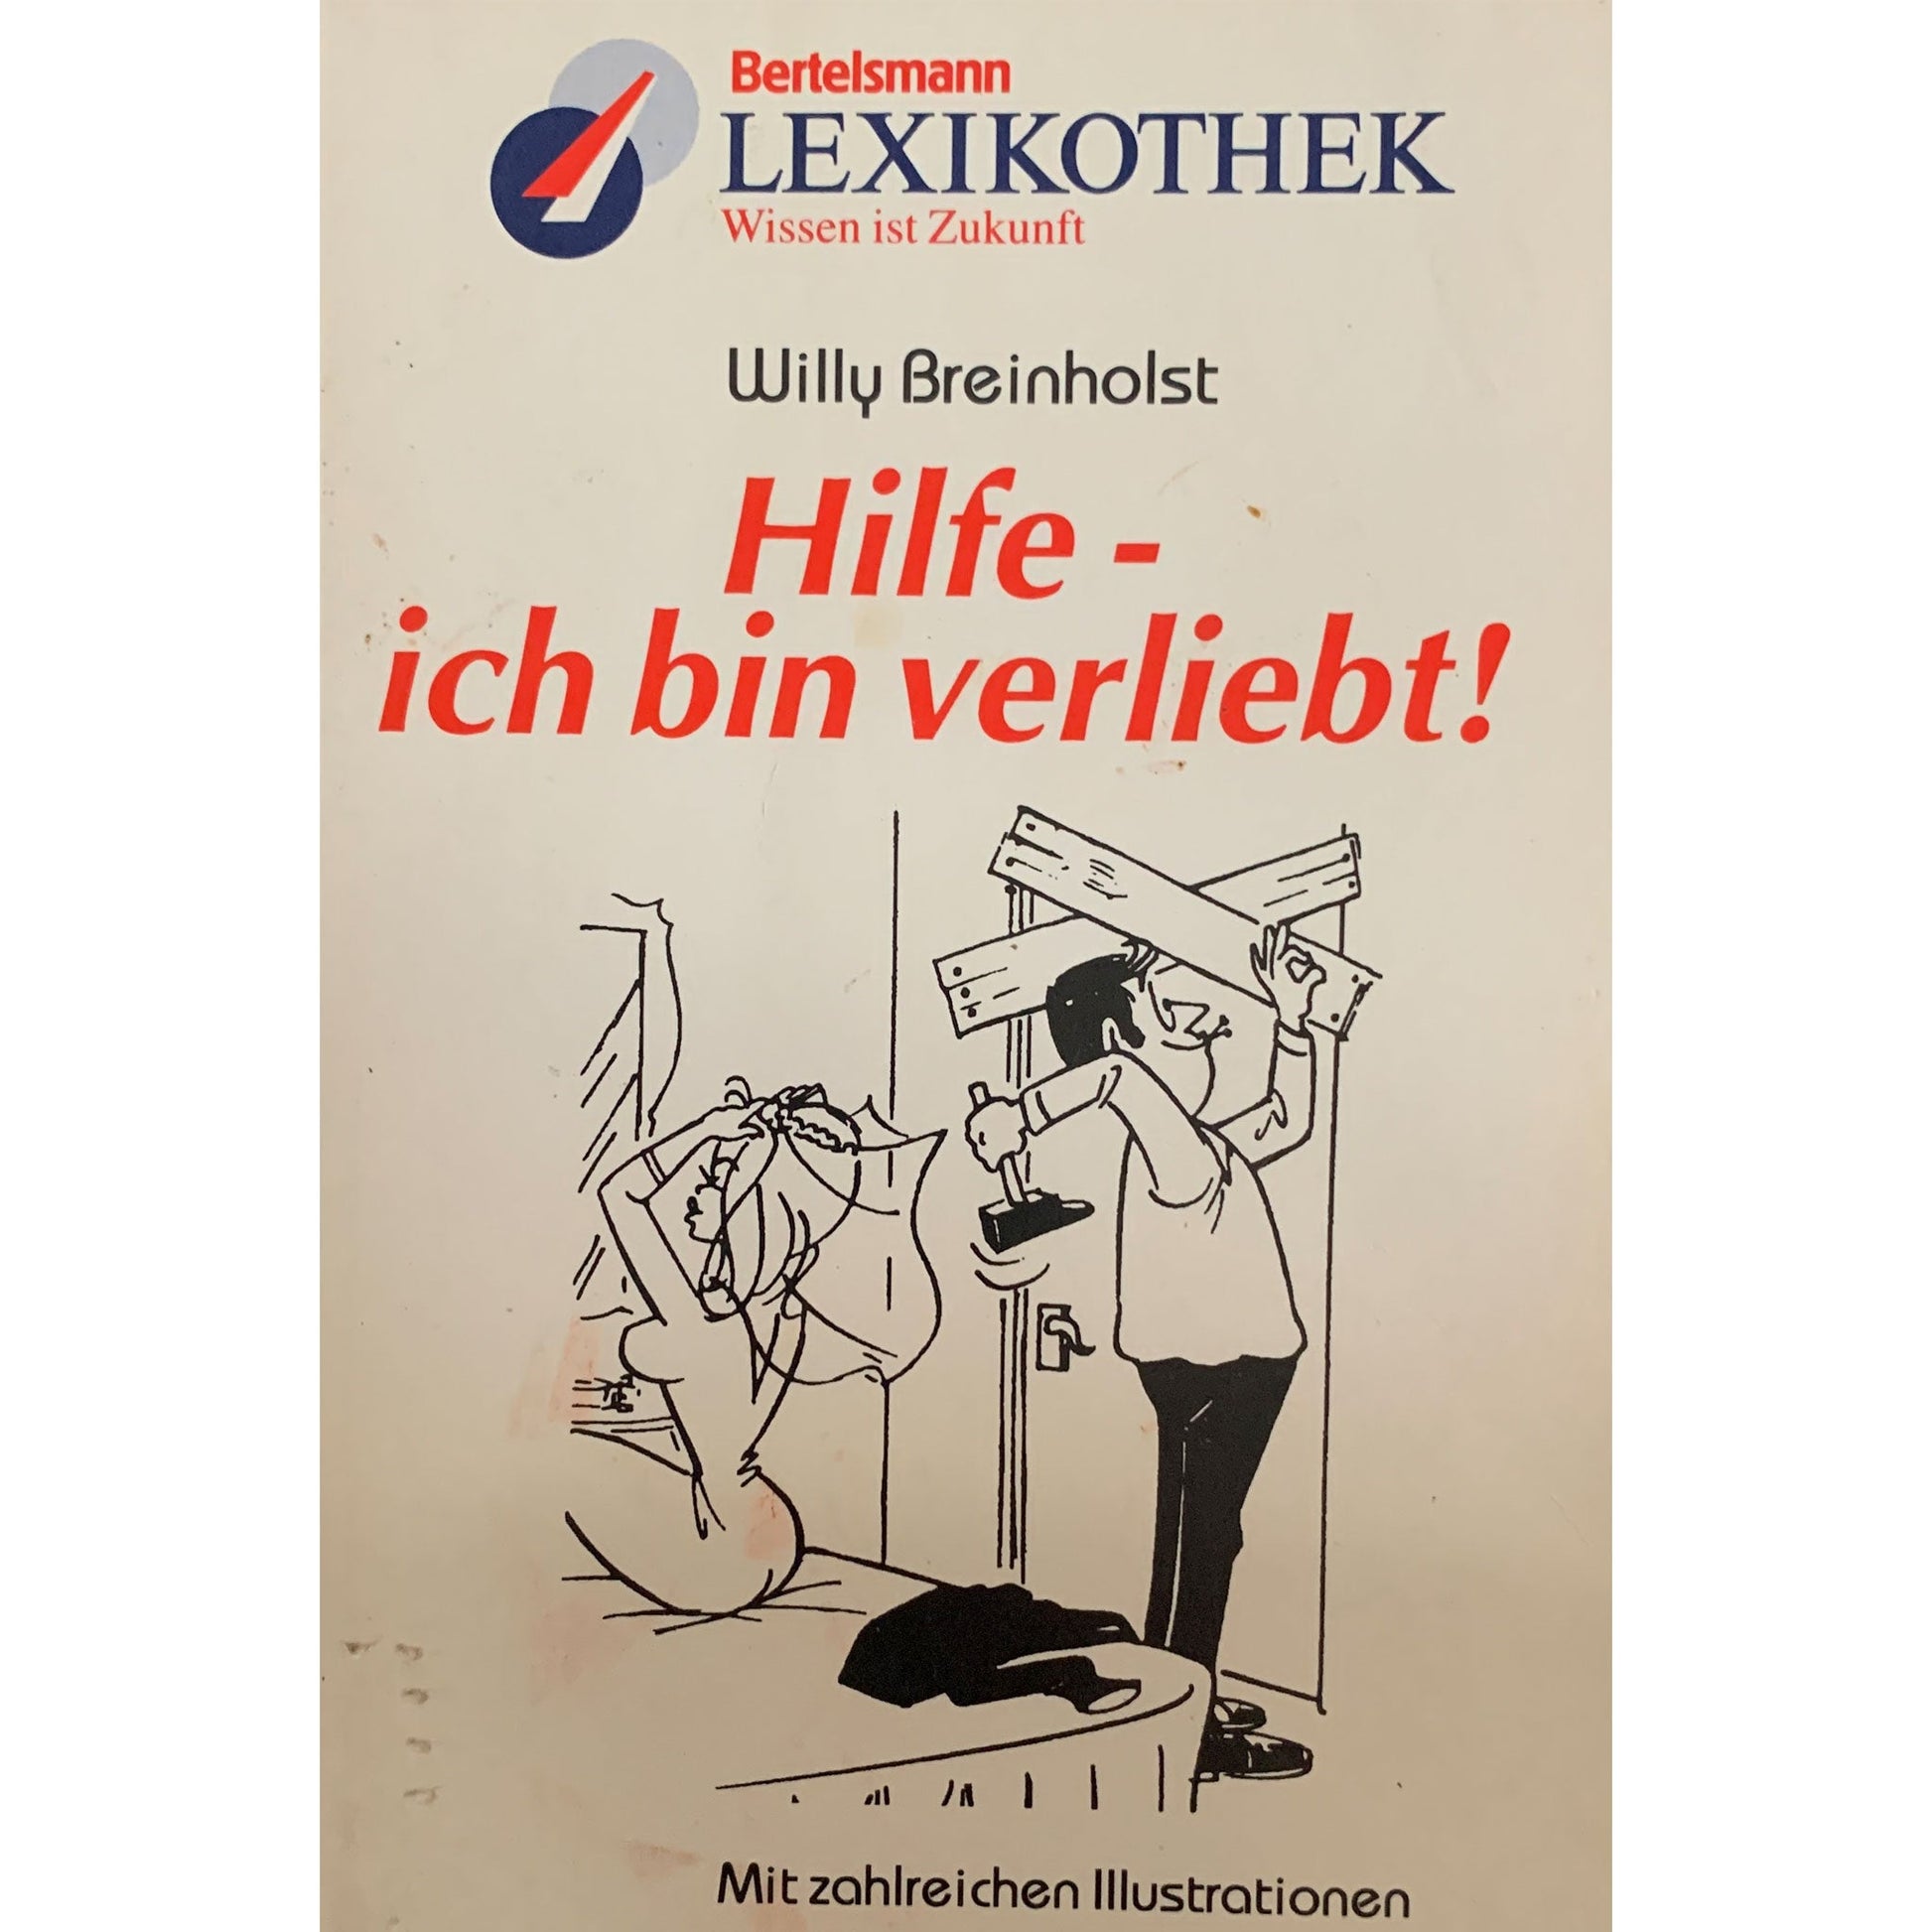 Bertelsmann Lexikothek: Hilfe, ich bin verliebt!